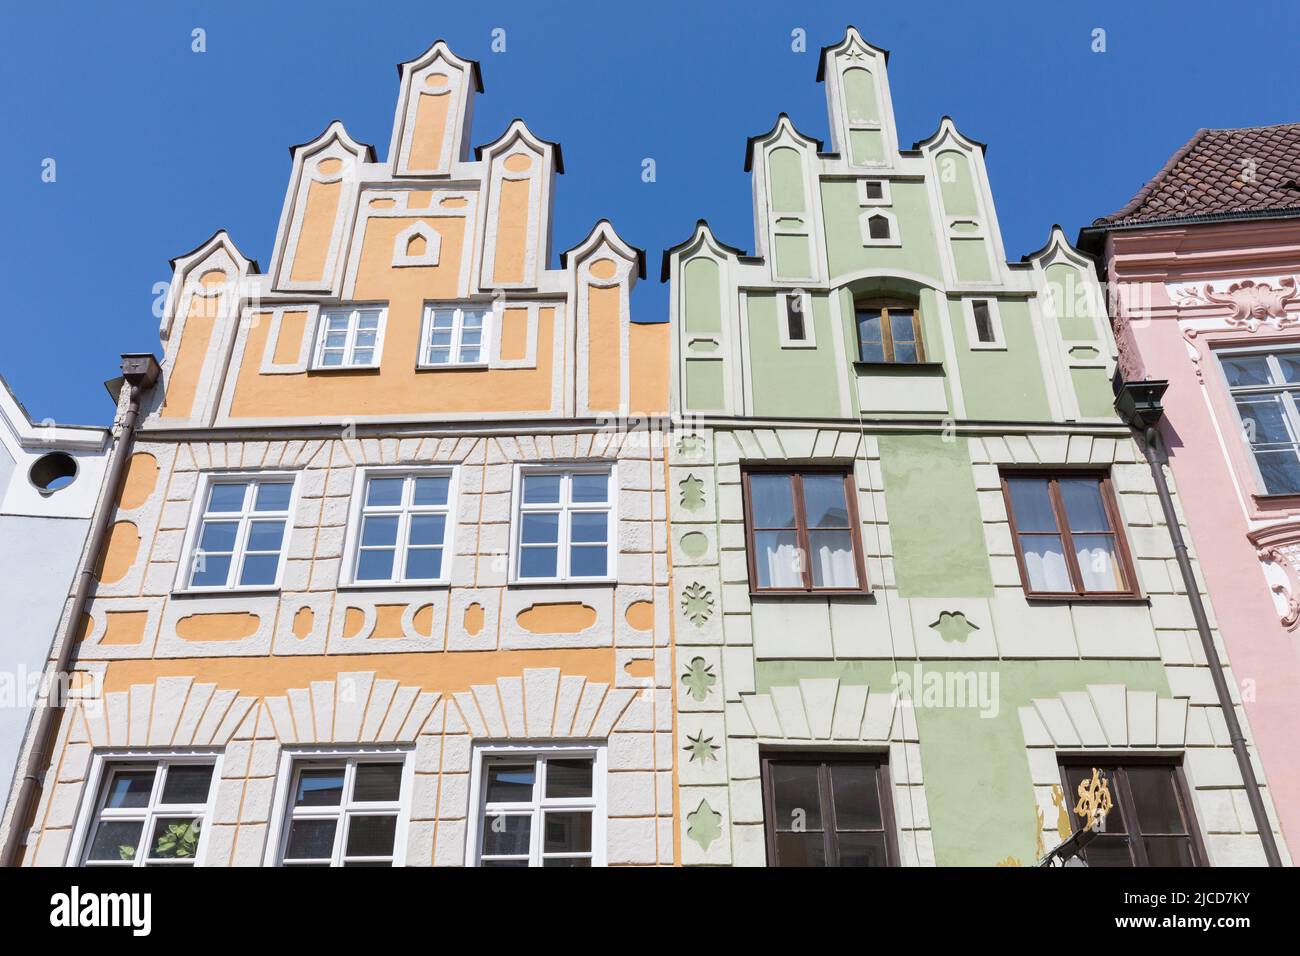 Landshut, Alemania - 14 de agosto de 2021: Casas históricas con fachada amarilla y verde en el casco antiguo de Landshut. Foto de stock